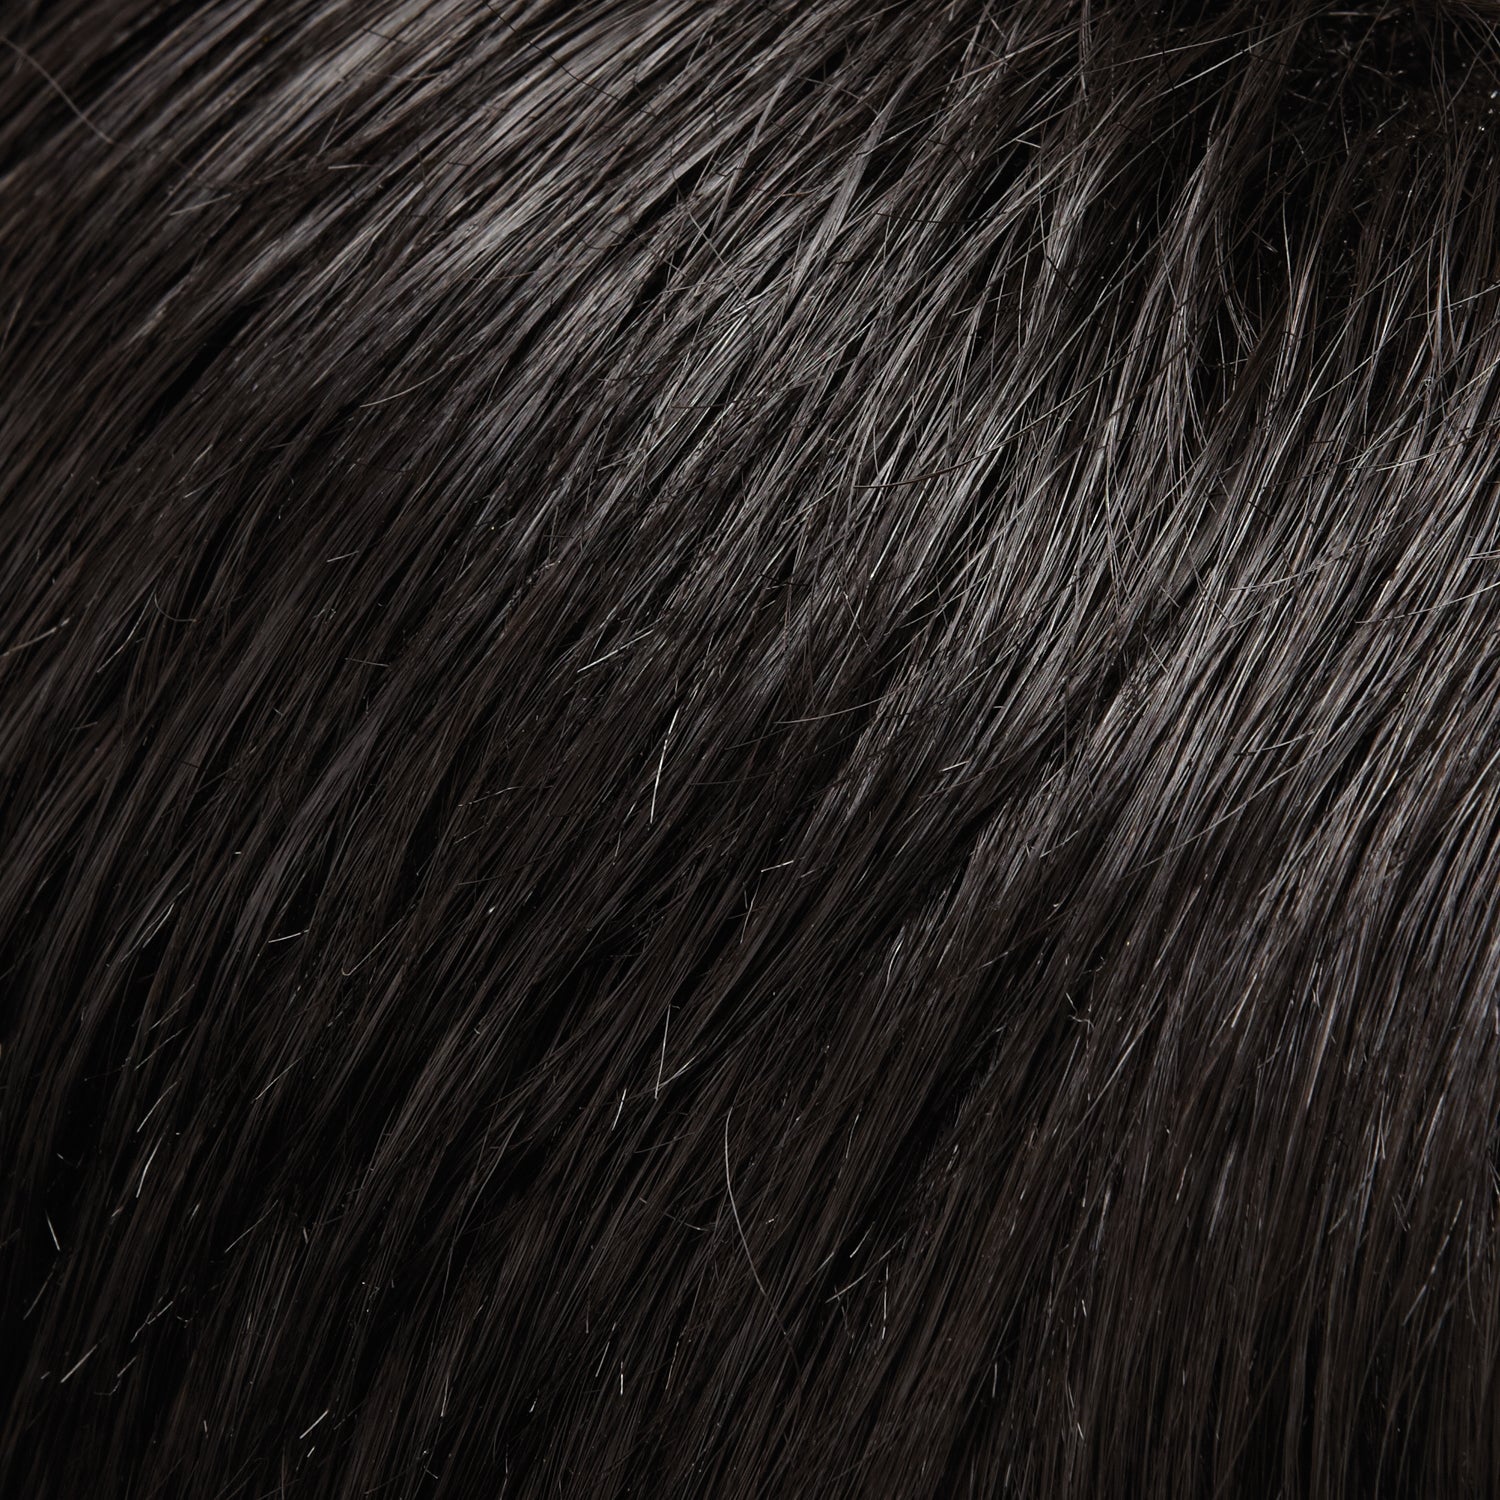 Top Flex human hair topper - Jon Renau *NEW*